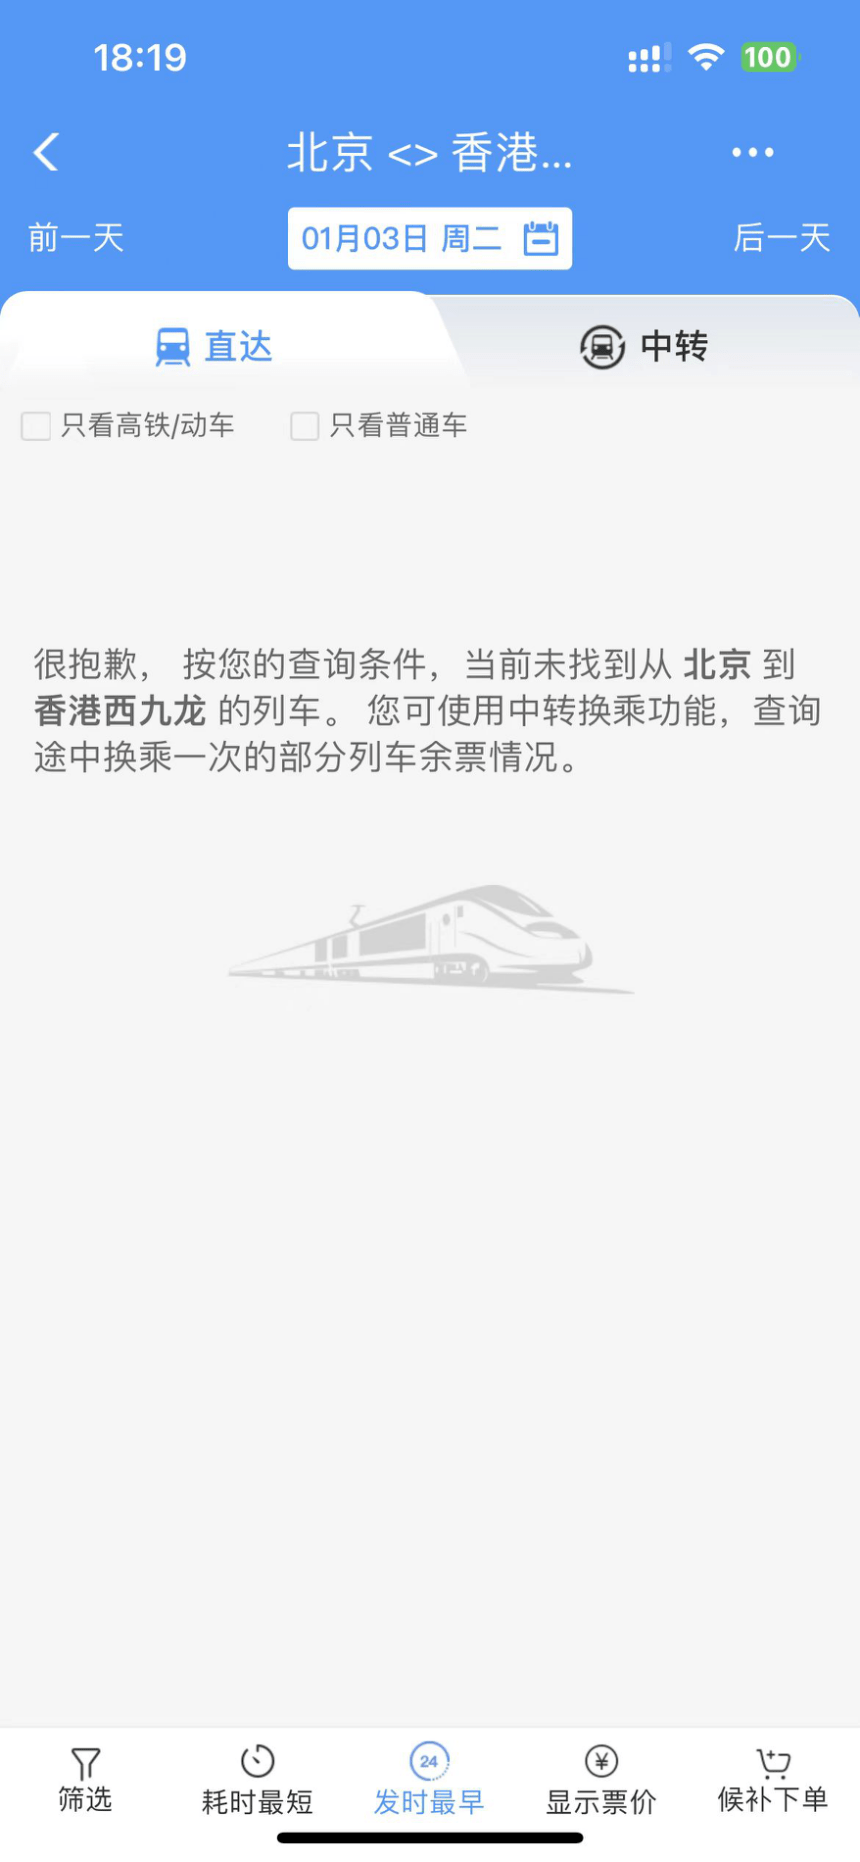 「12306 APP」明年1月3日未有北京赴港列车班次。网上图片